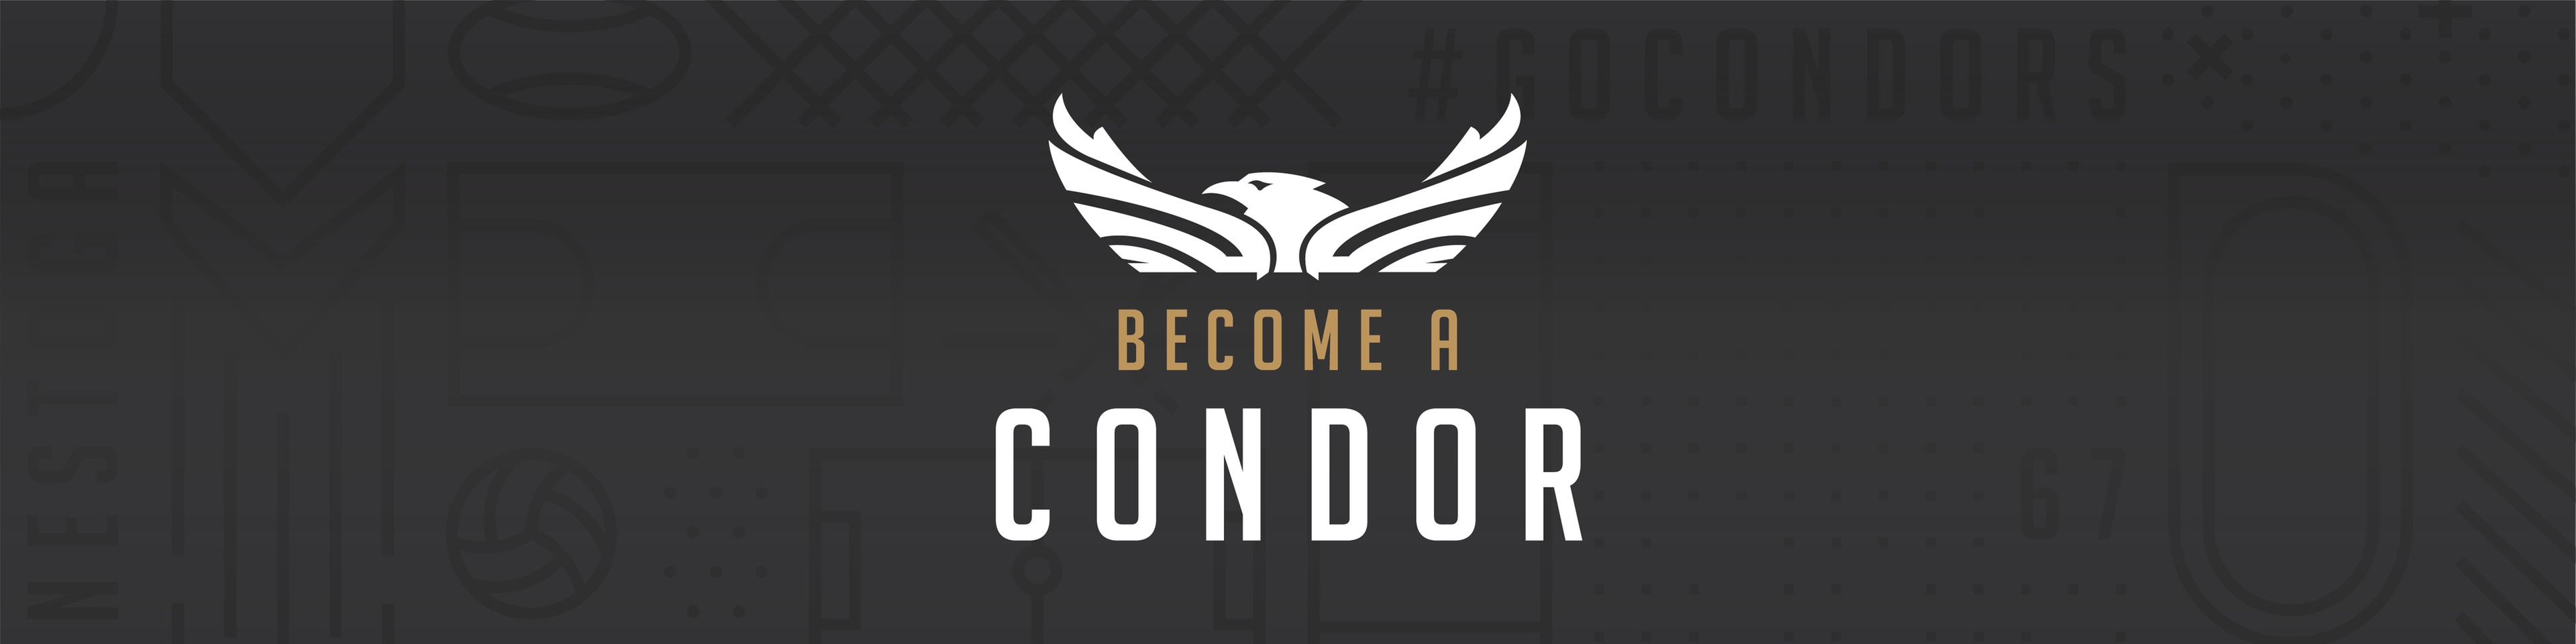 Become a Condor